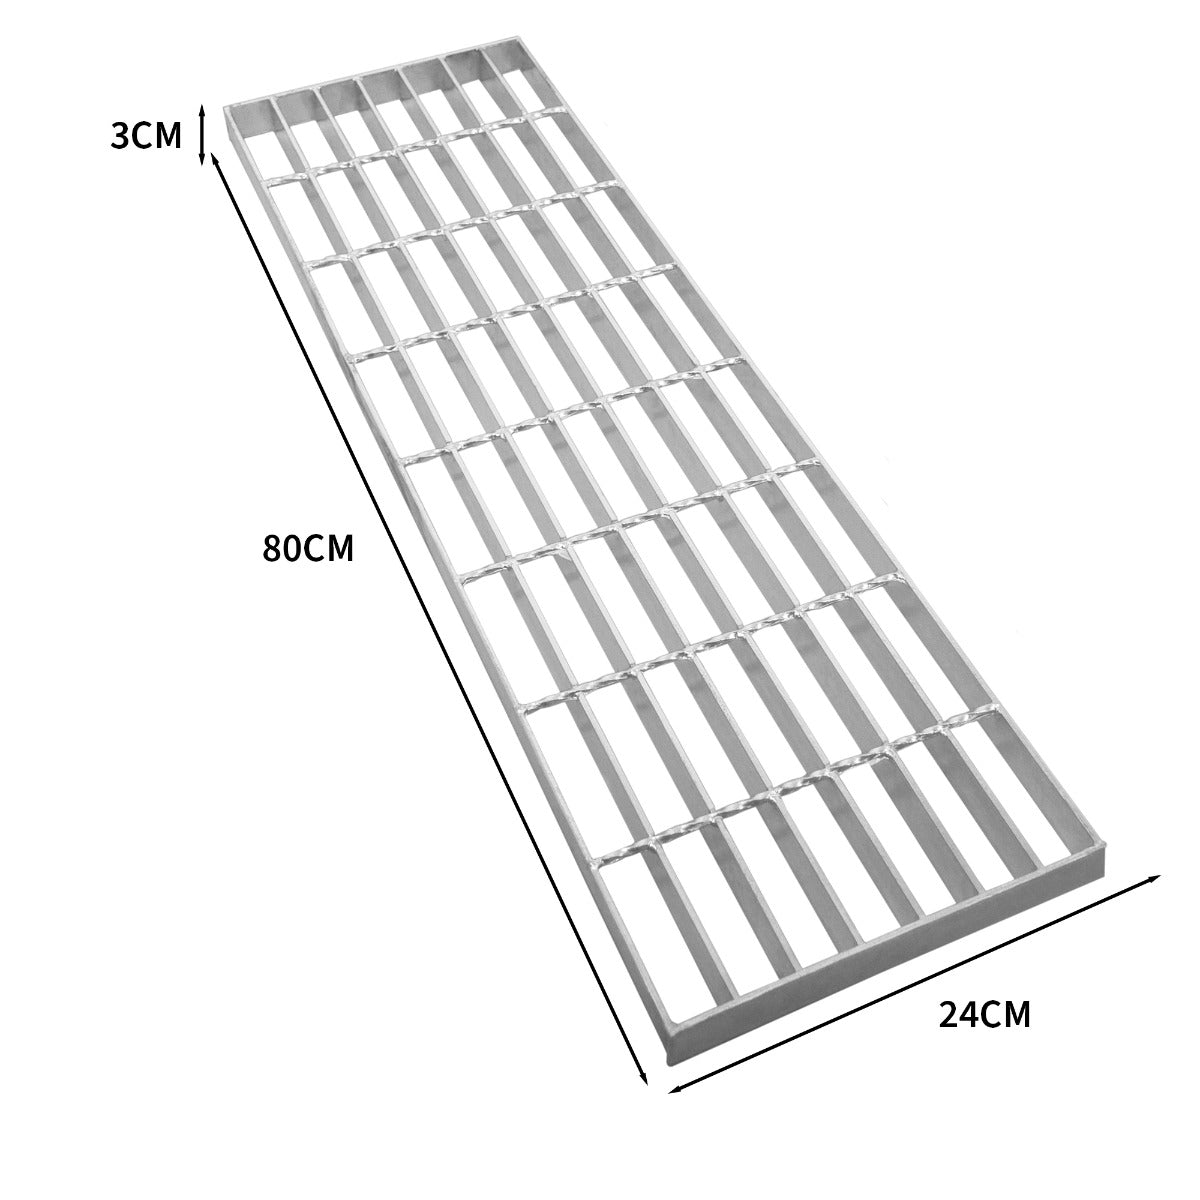 Griglia passerella in acciaio zincato griglia pavimento con scarico grigliato grondaia - 800 mm x 240 mm